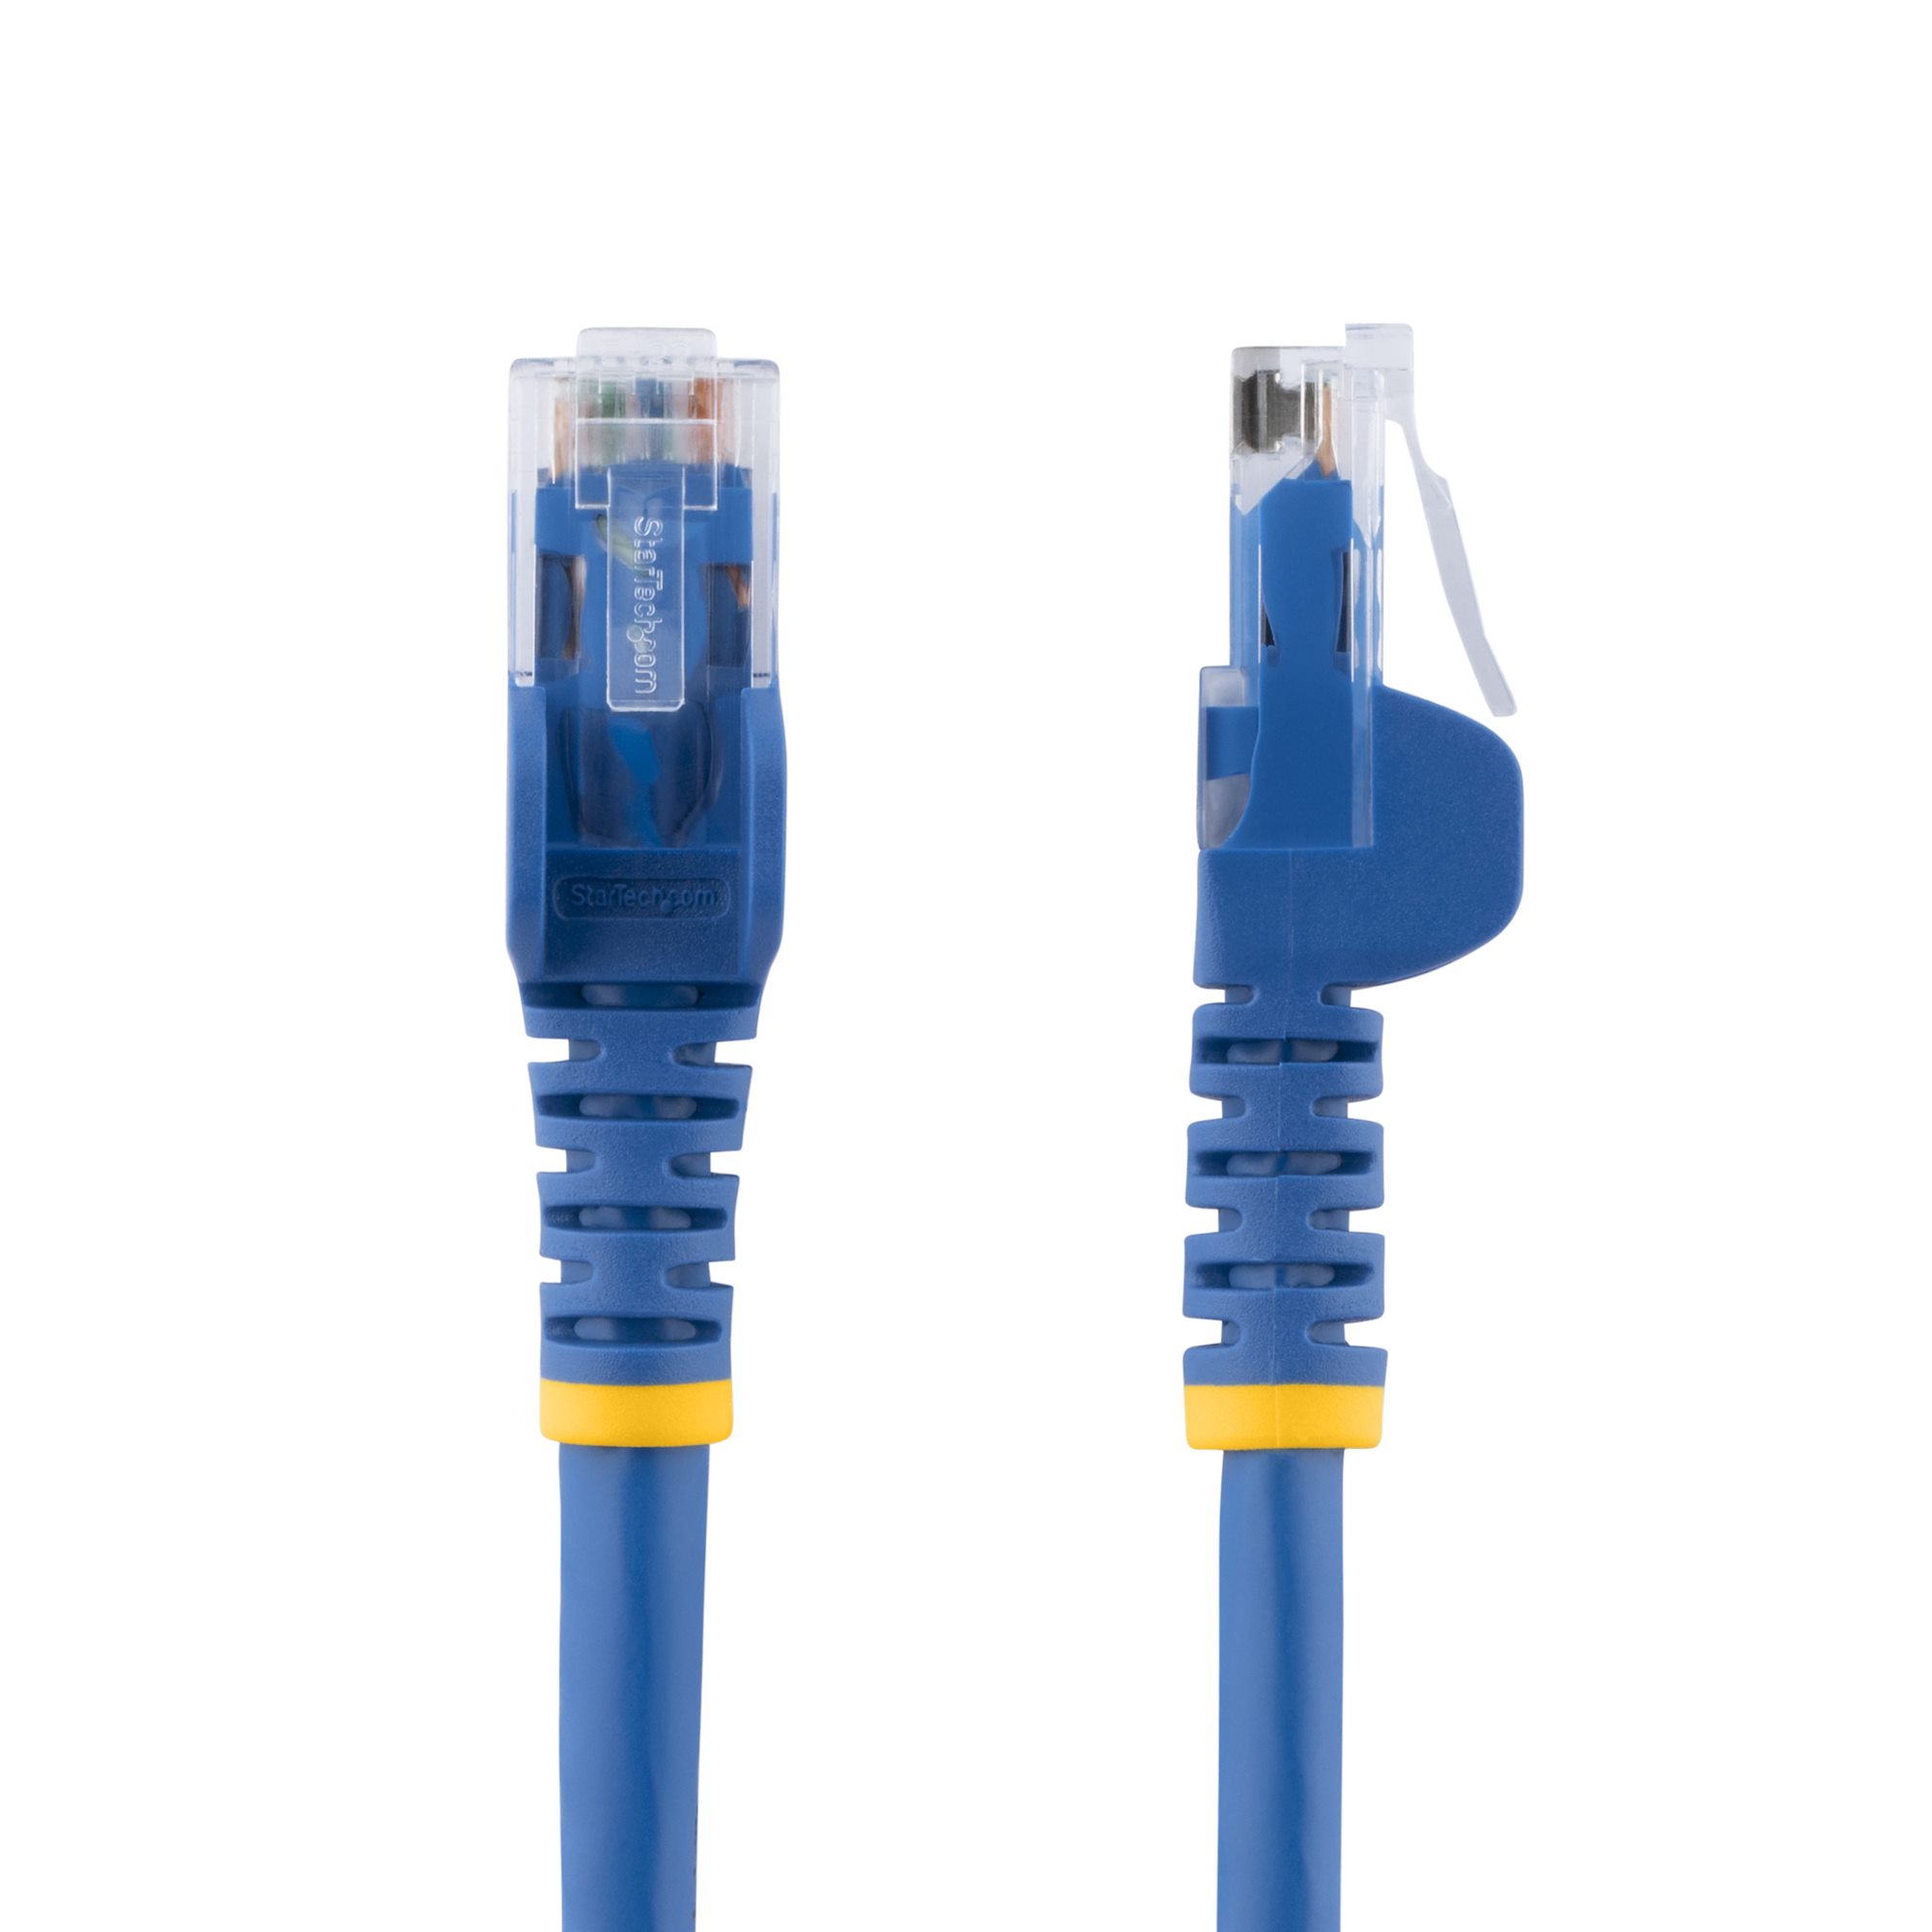 3m CAT6 Ethernet Cable Blue Cat 6 PoE (N6PATC3MBL) - Cat 6 Cables, Cables